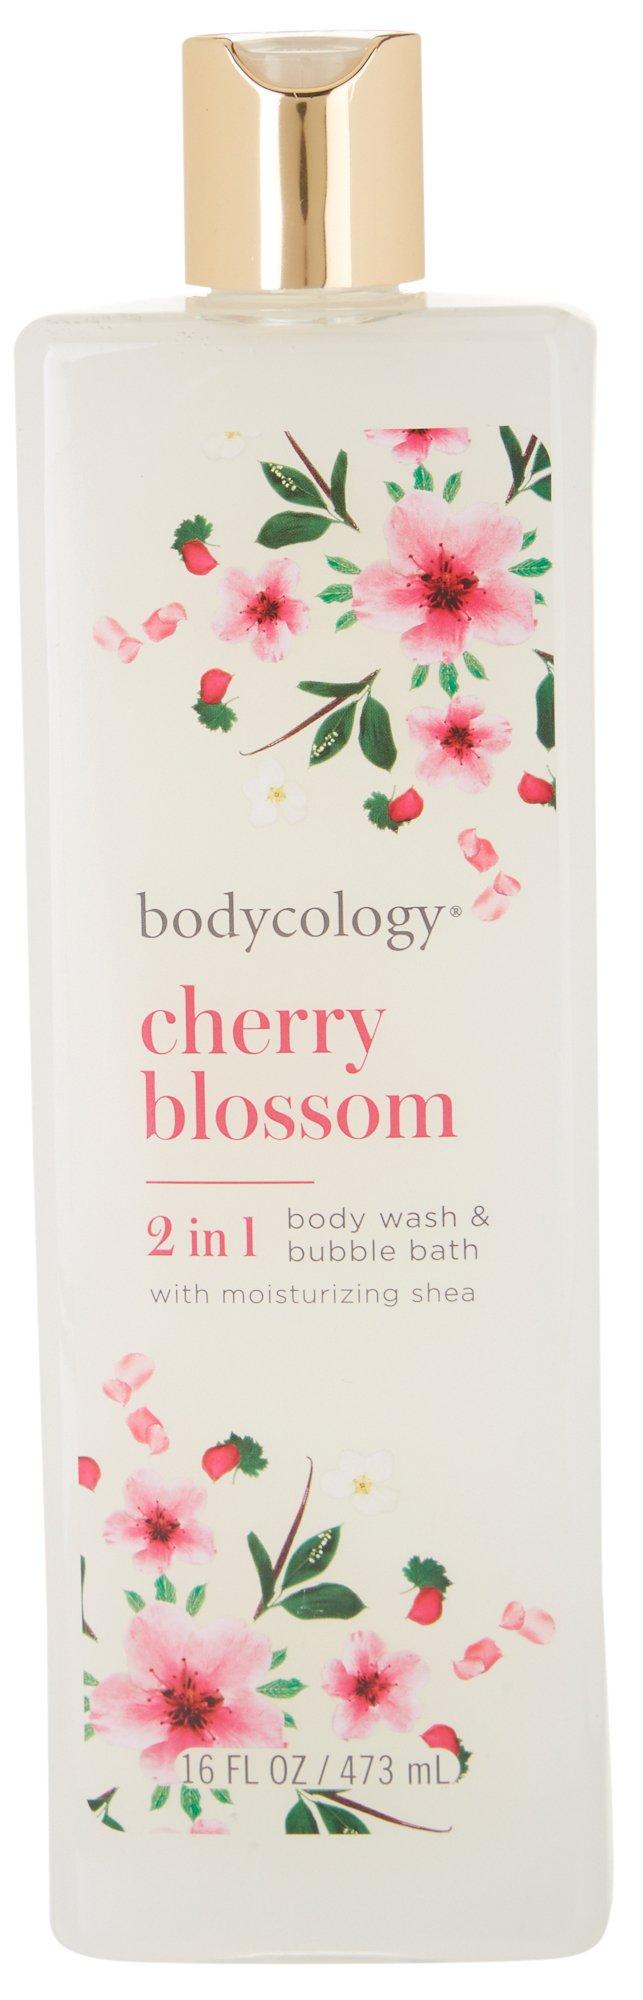 Cherry Blossom Body Wash & Bubble Bath 16 oz.